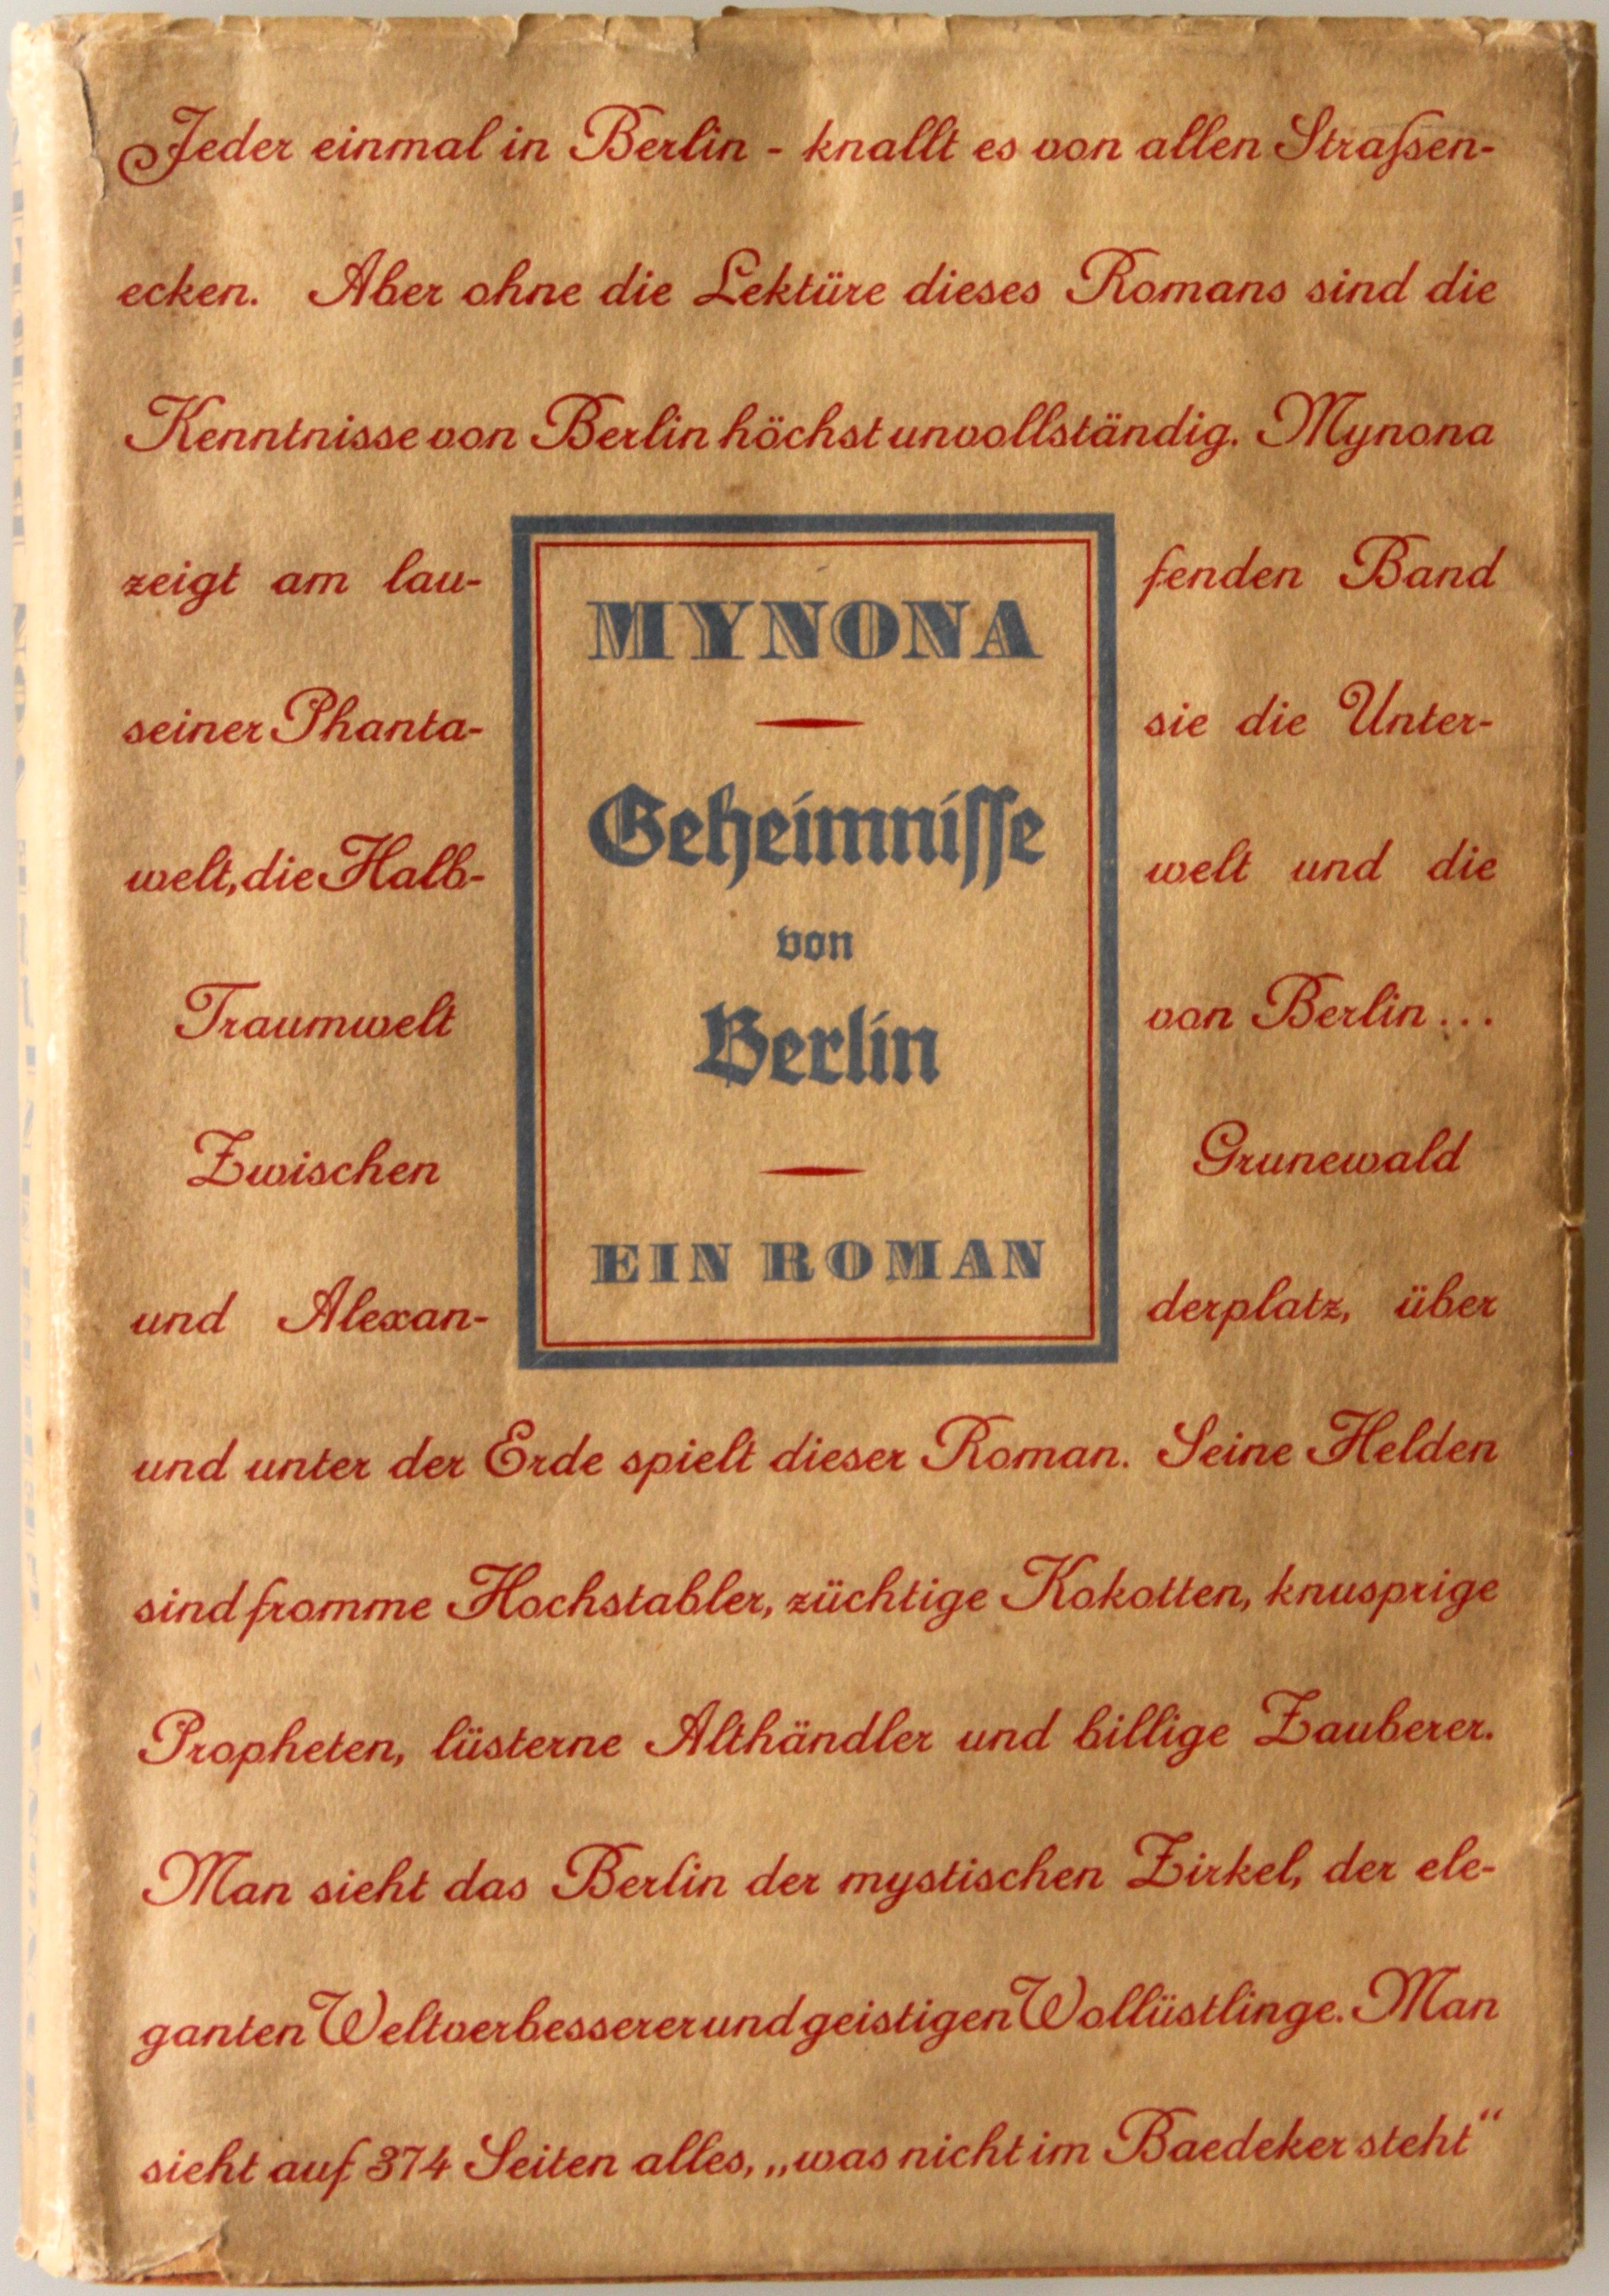 Mynona, Geheimnisse von Berlin. Paul Steegemann, 1931